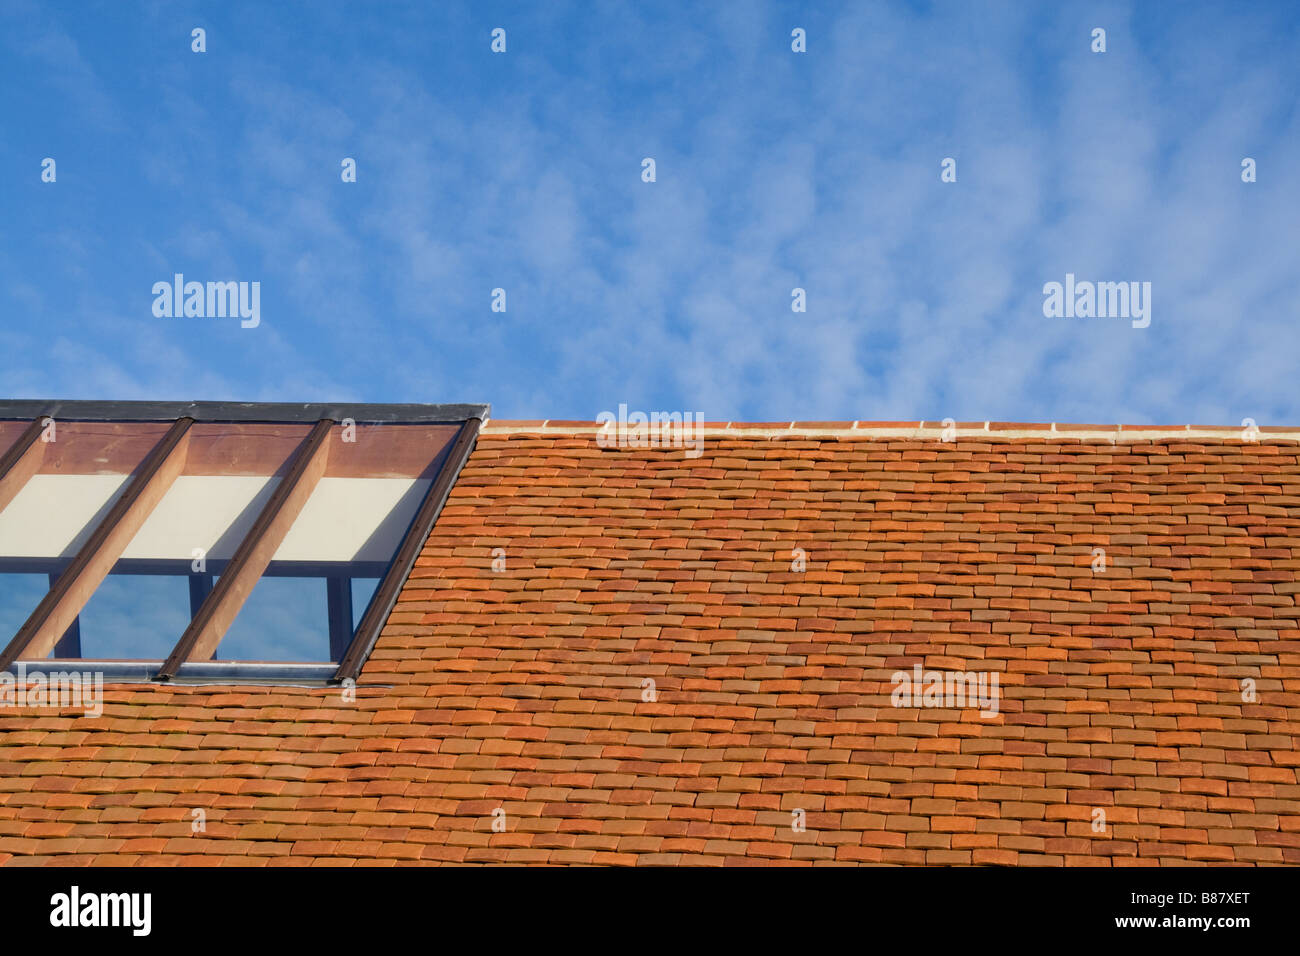 Techo de tejas de arcilla roja, contra un cielo azul, con un techo de vidrio claro. Foto de stock